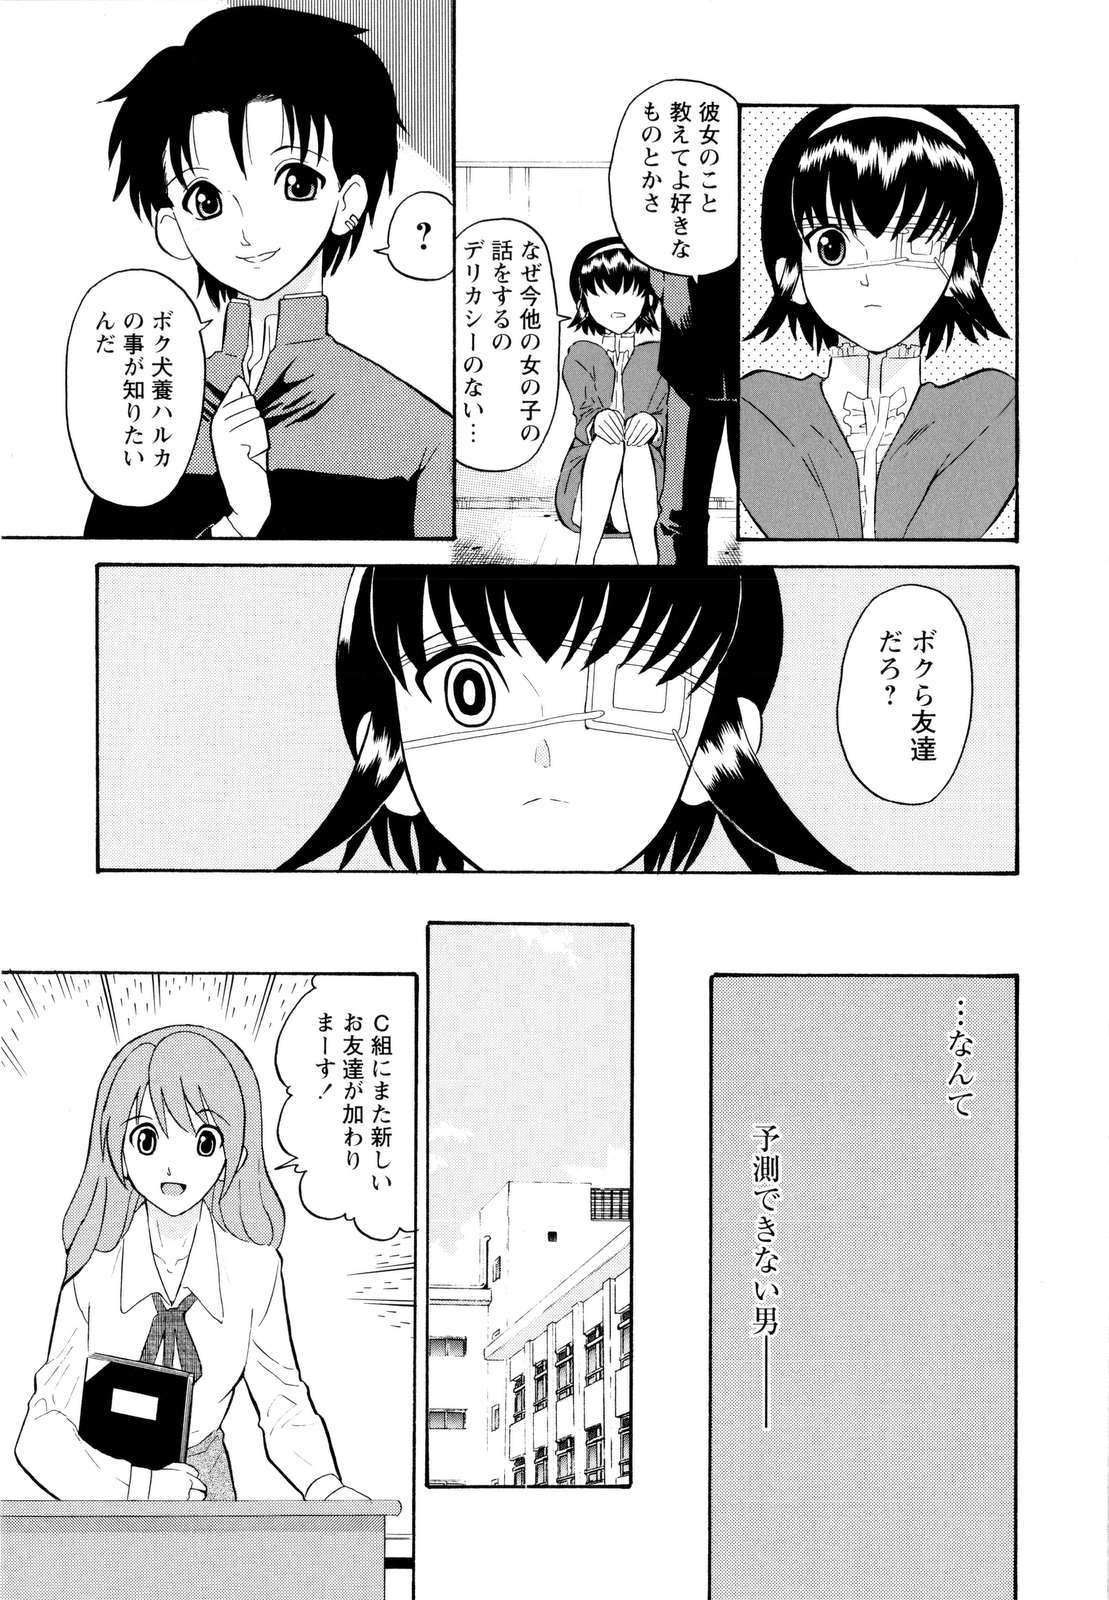 [Dozamura] Haruka 69 Vol.2 page 28 full